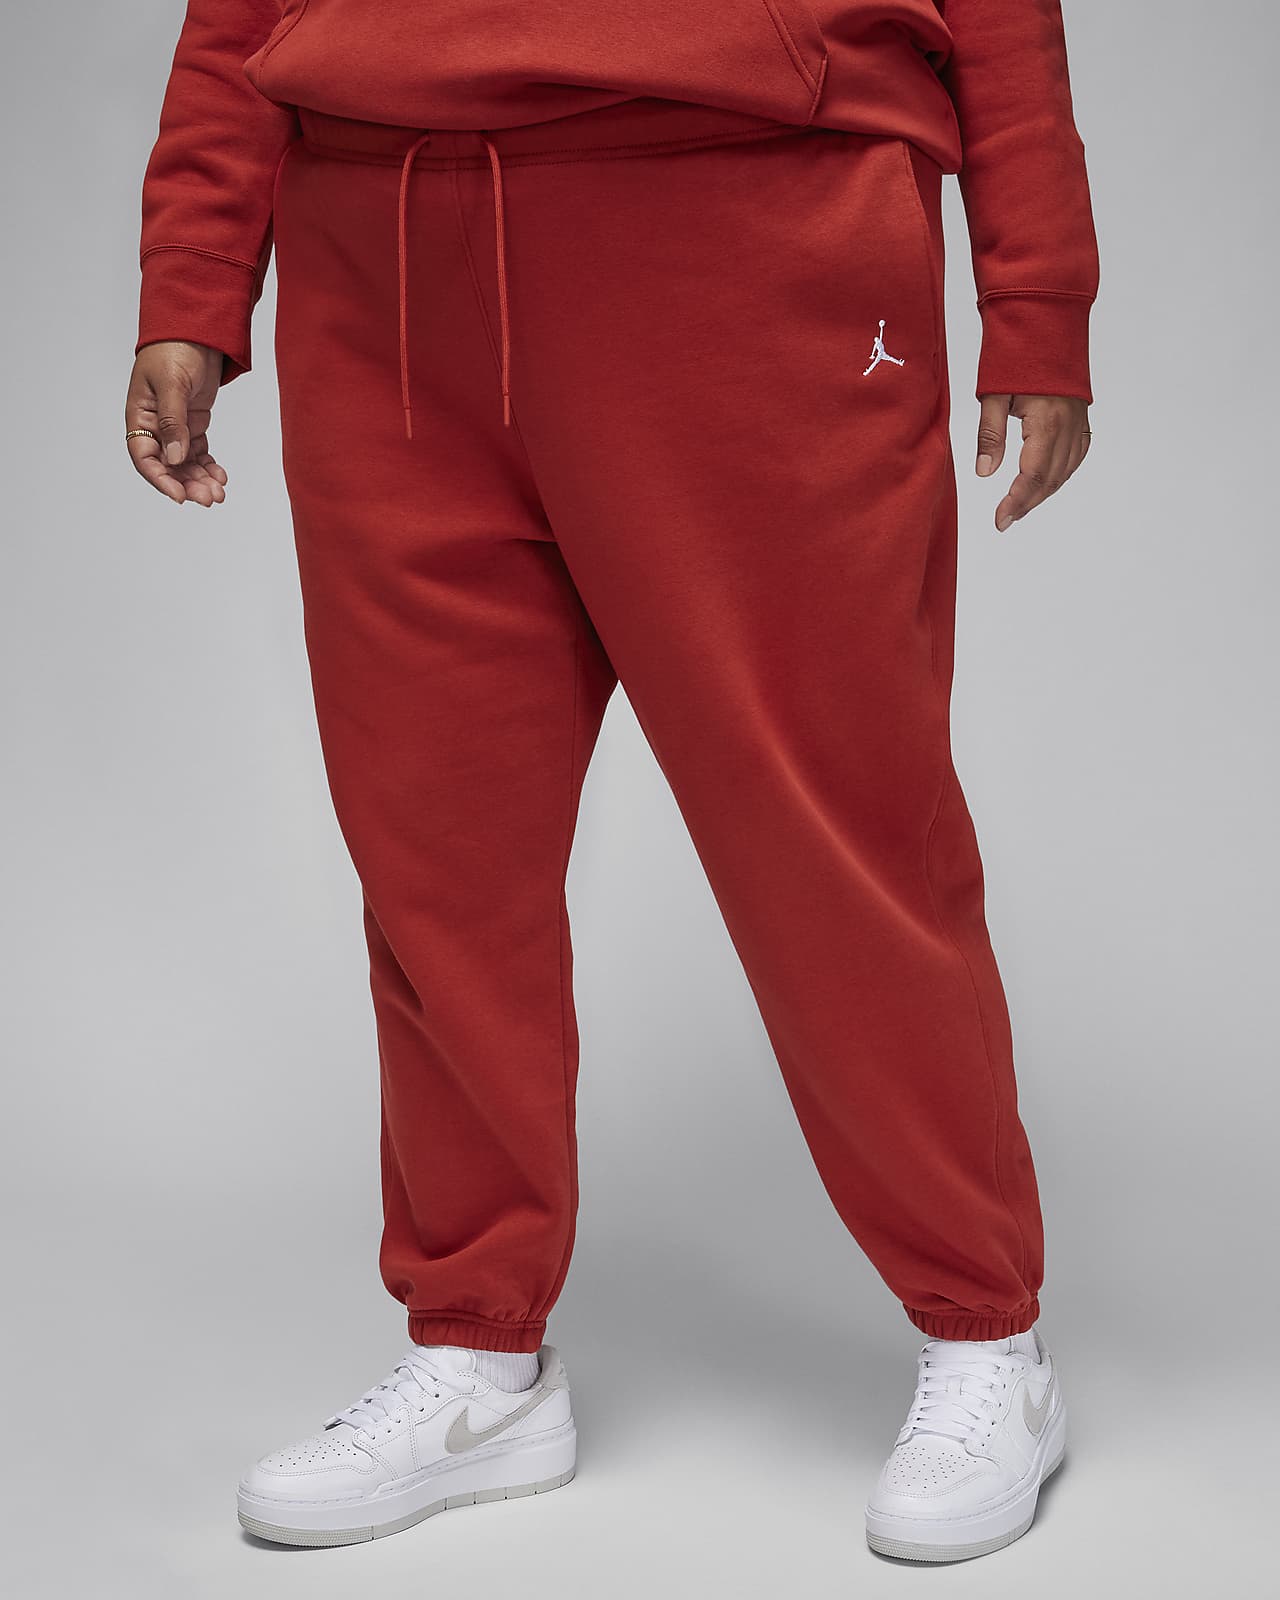 Dámské kalhoty Jordan Brooklyn Fleece (větší velikost)